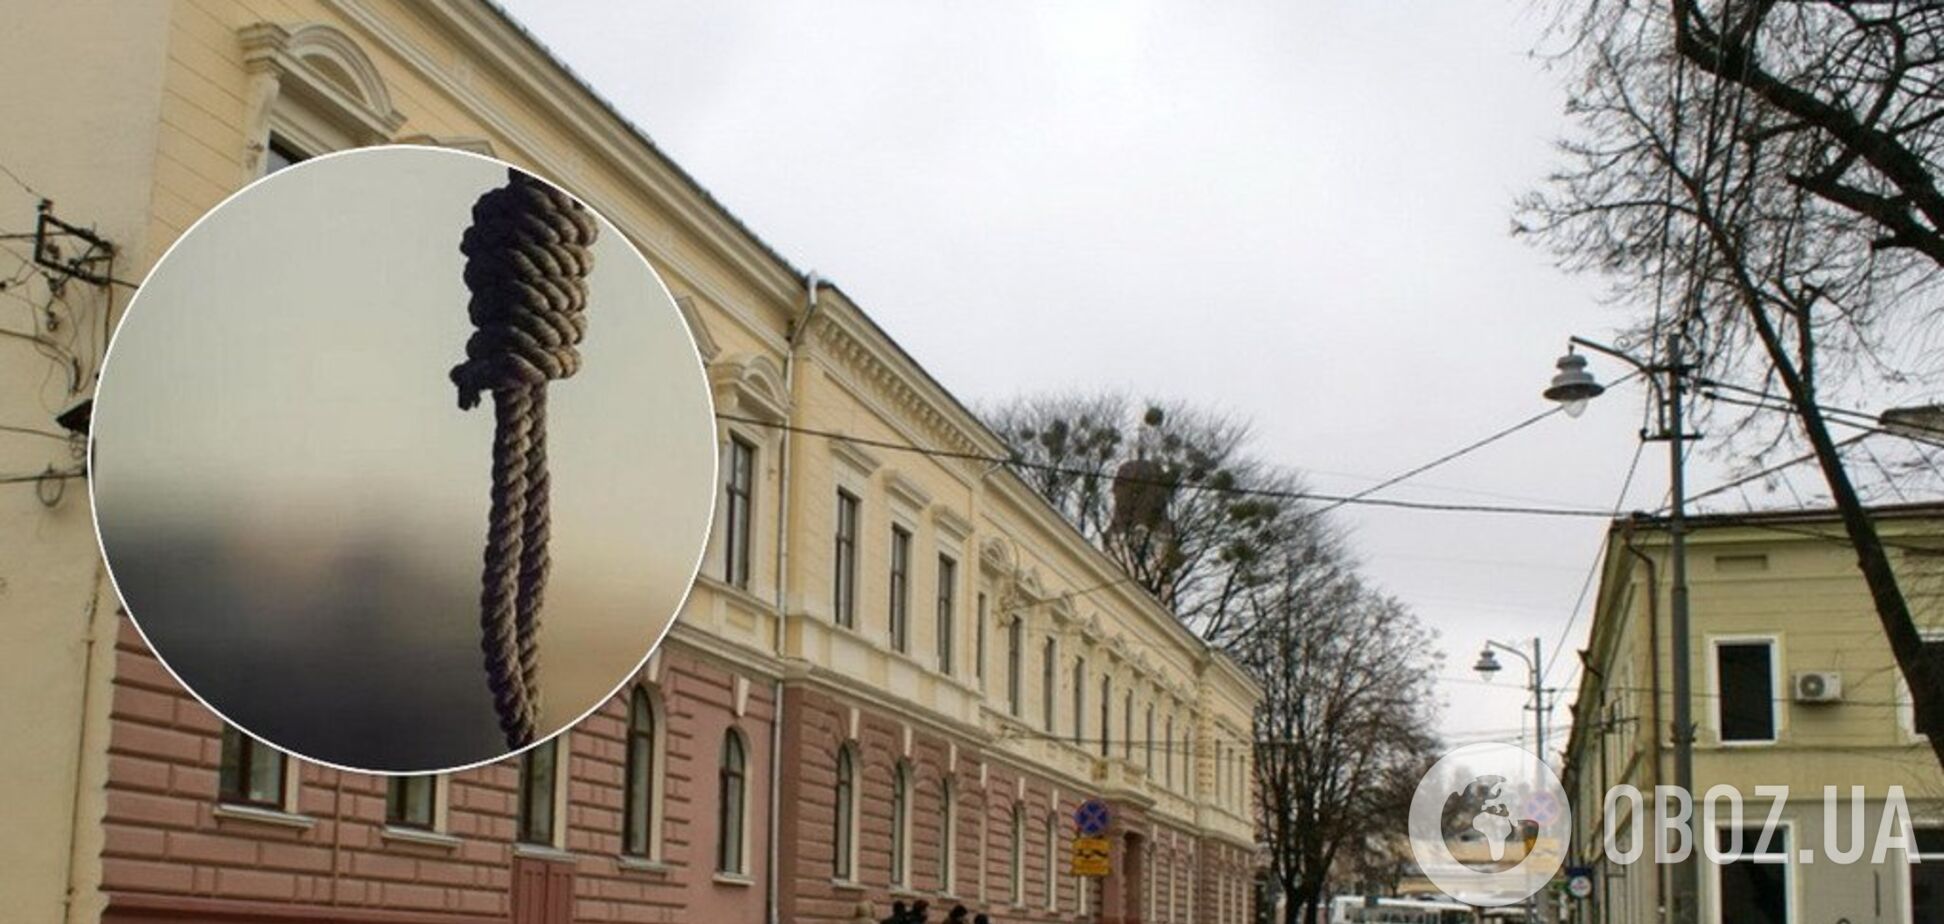 Тело нашла уборщица: в Черновцах в школе совершили самоубийство